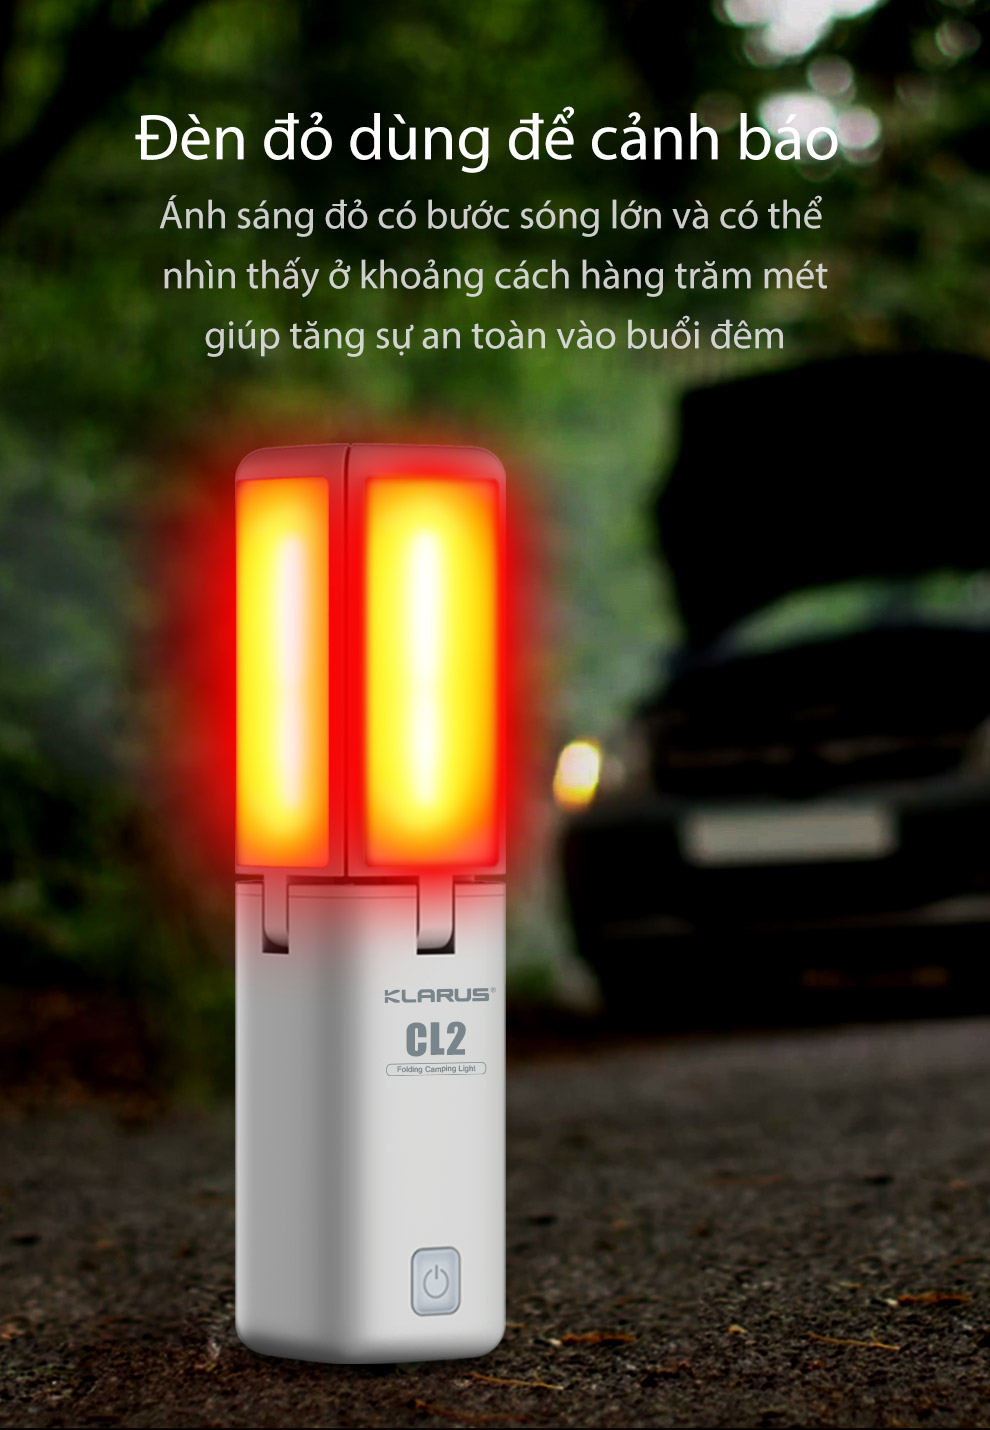 klarus cl2 trang bị đèn đỏ dùng để cảnh báo